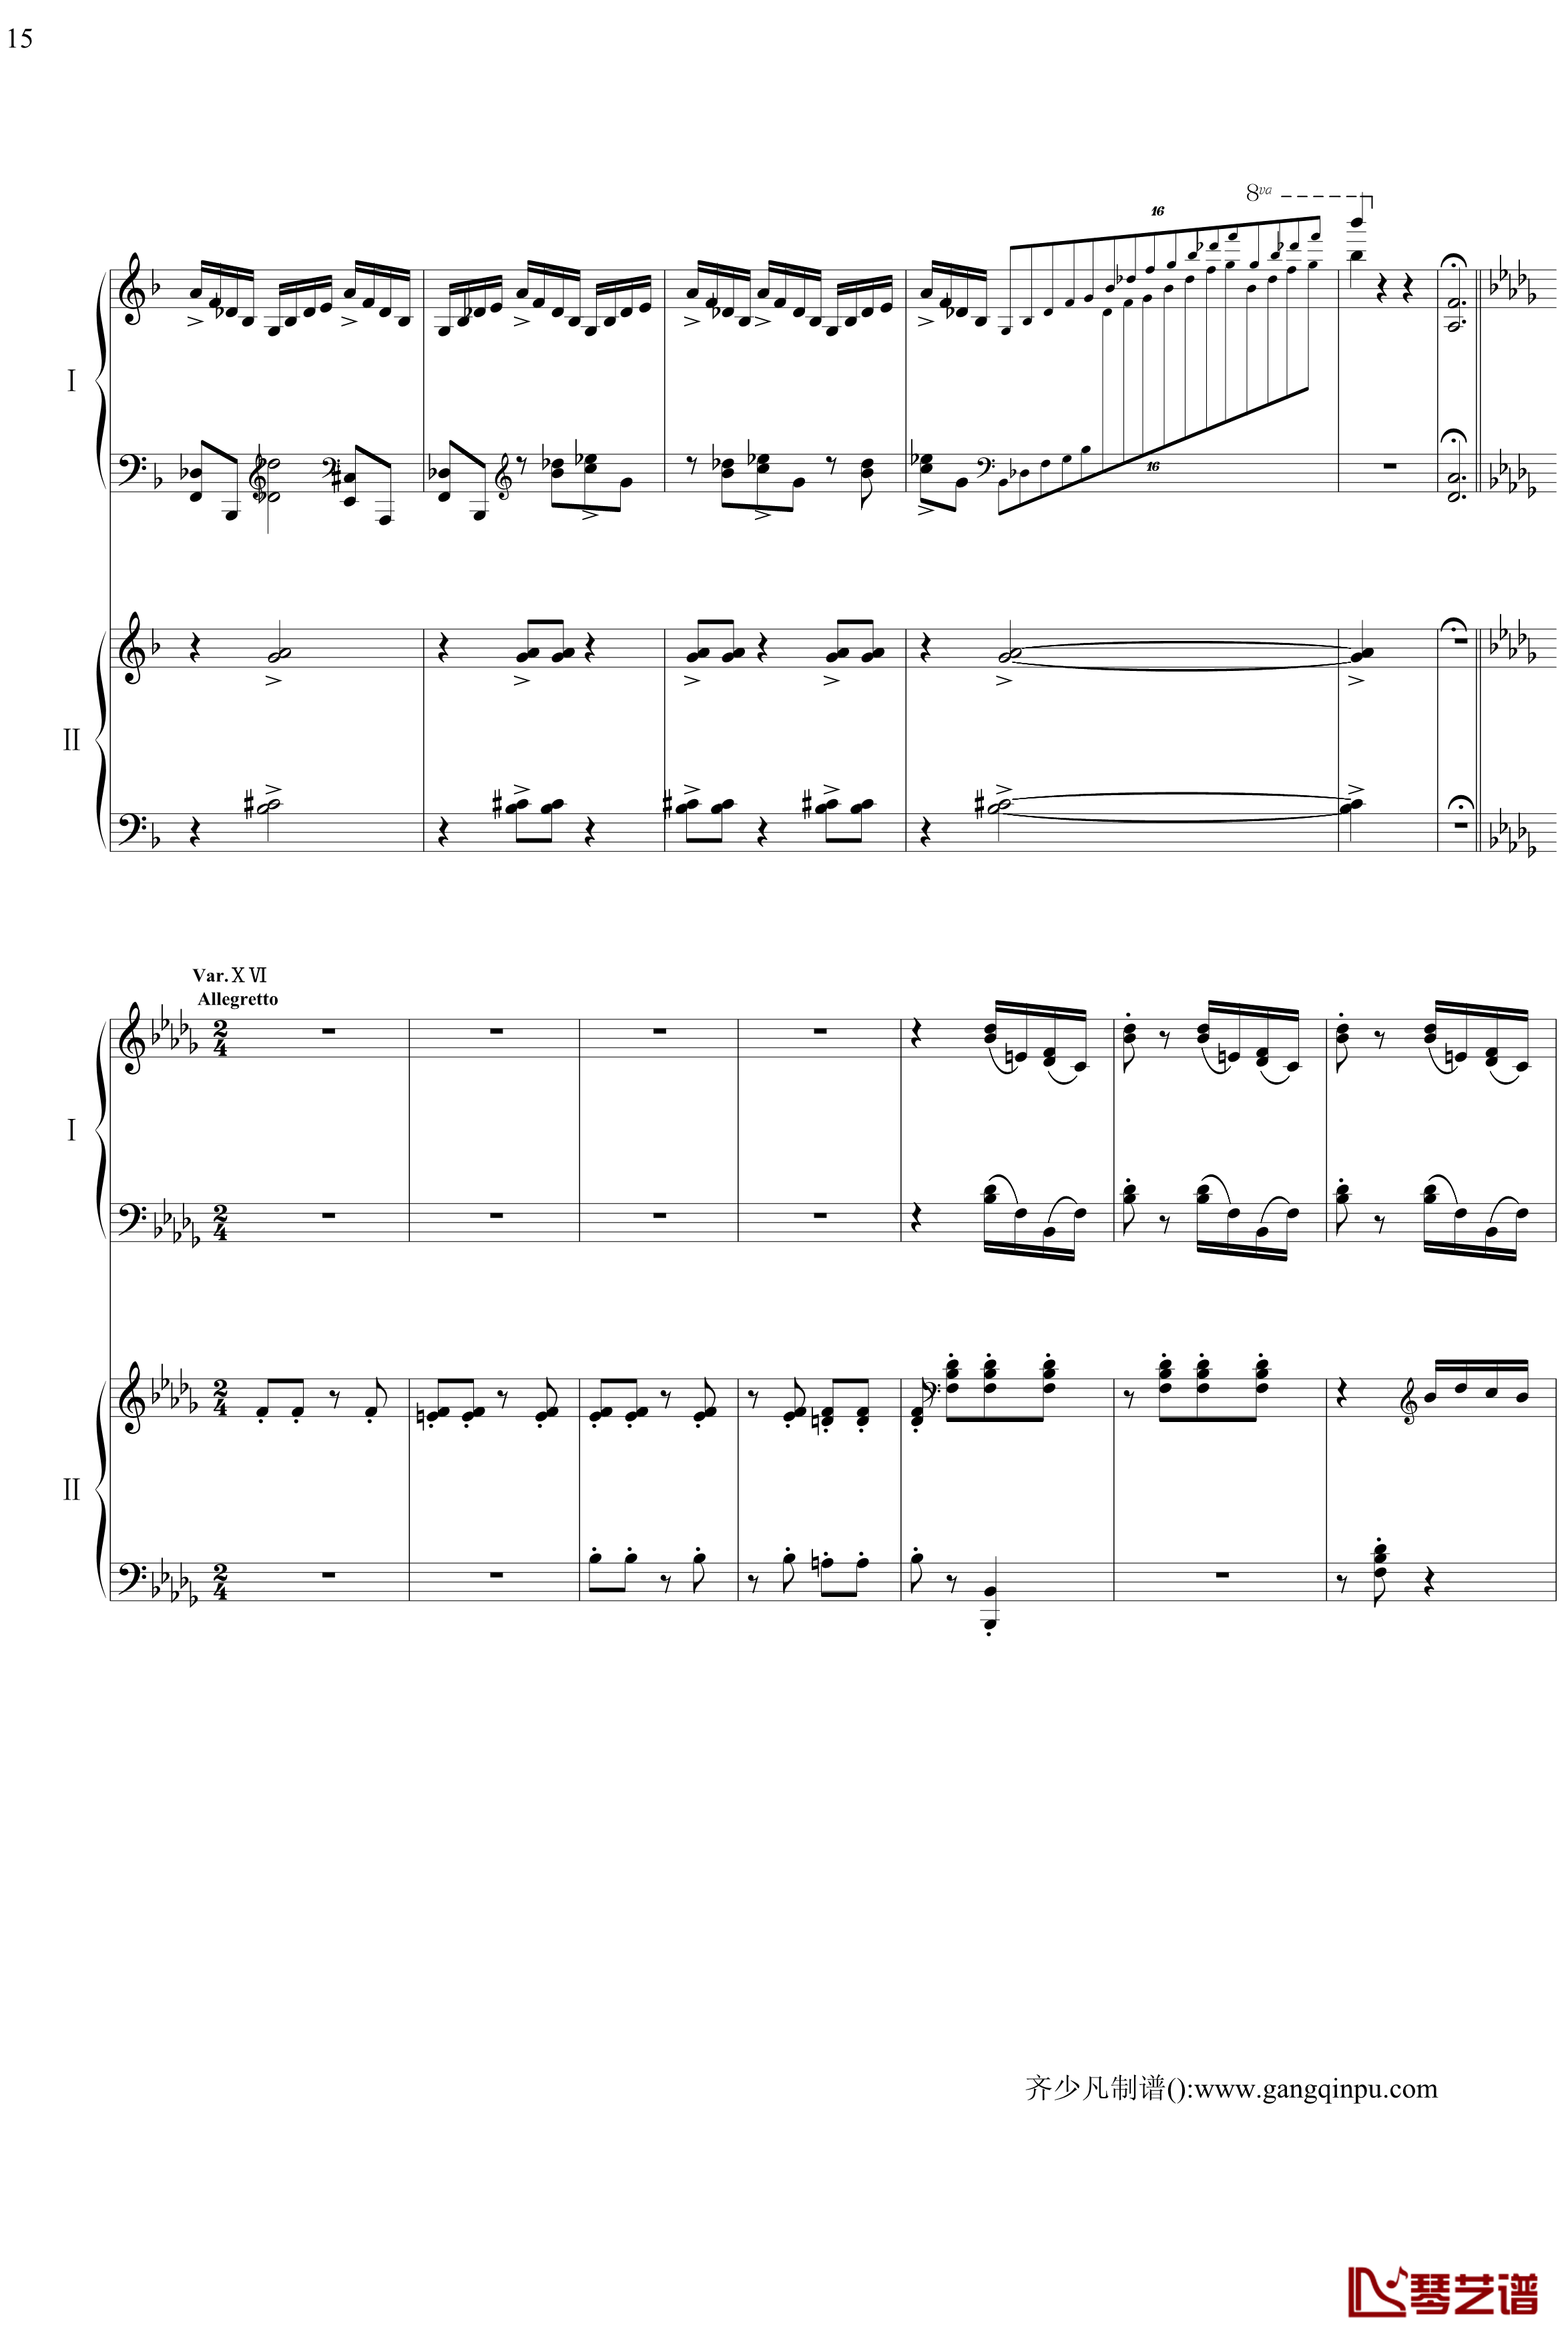 帕格尼尼主题狂想曲钢琴谱-11~18变奏-拉赫马尼若夫